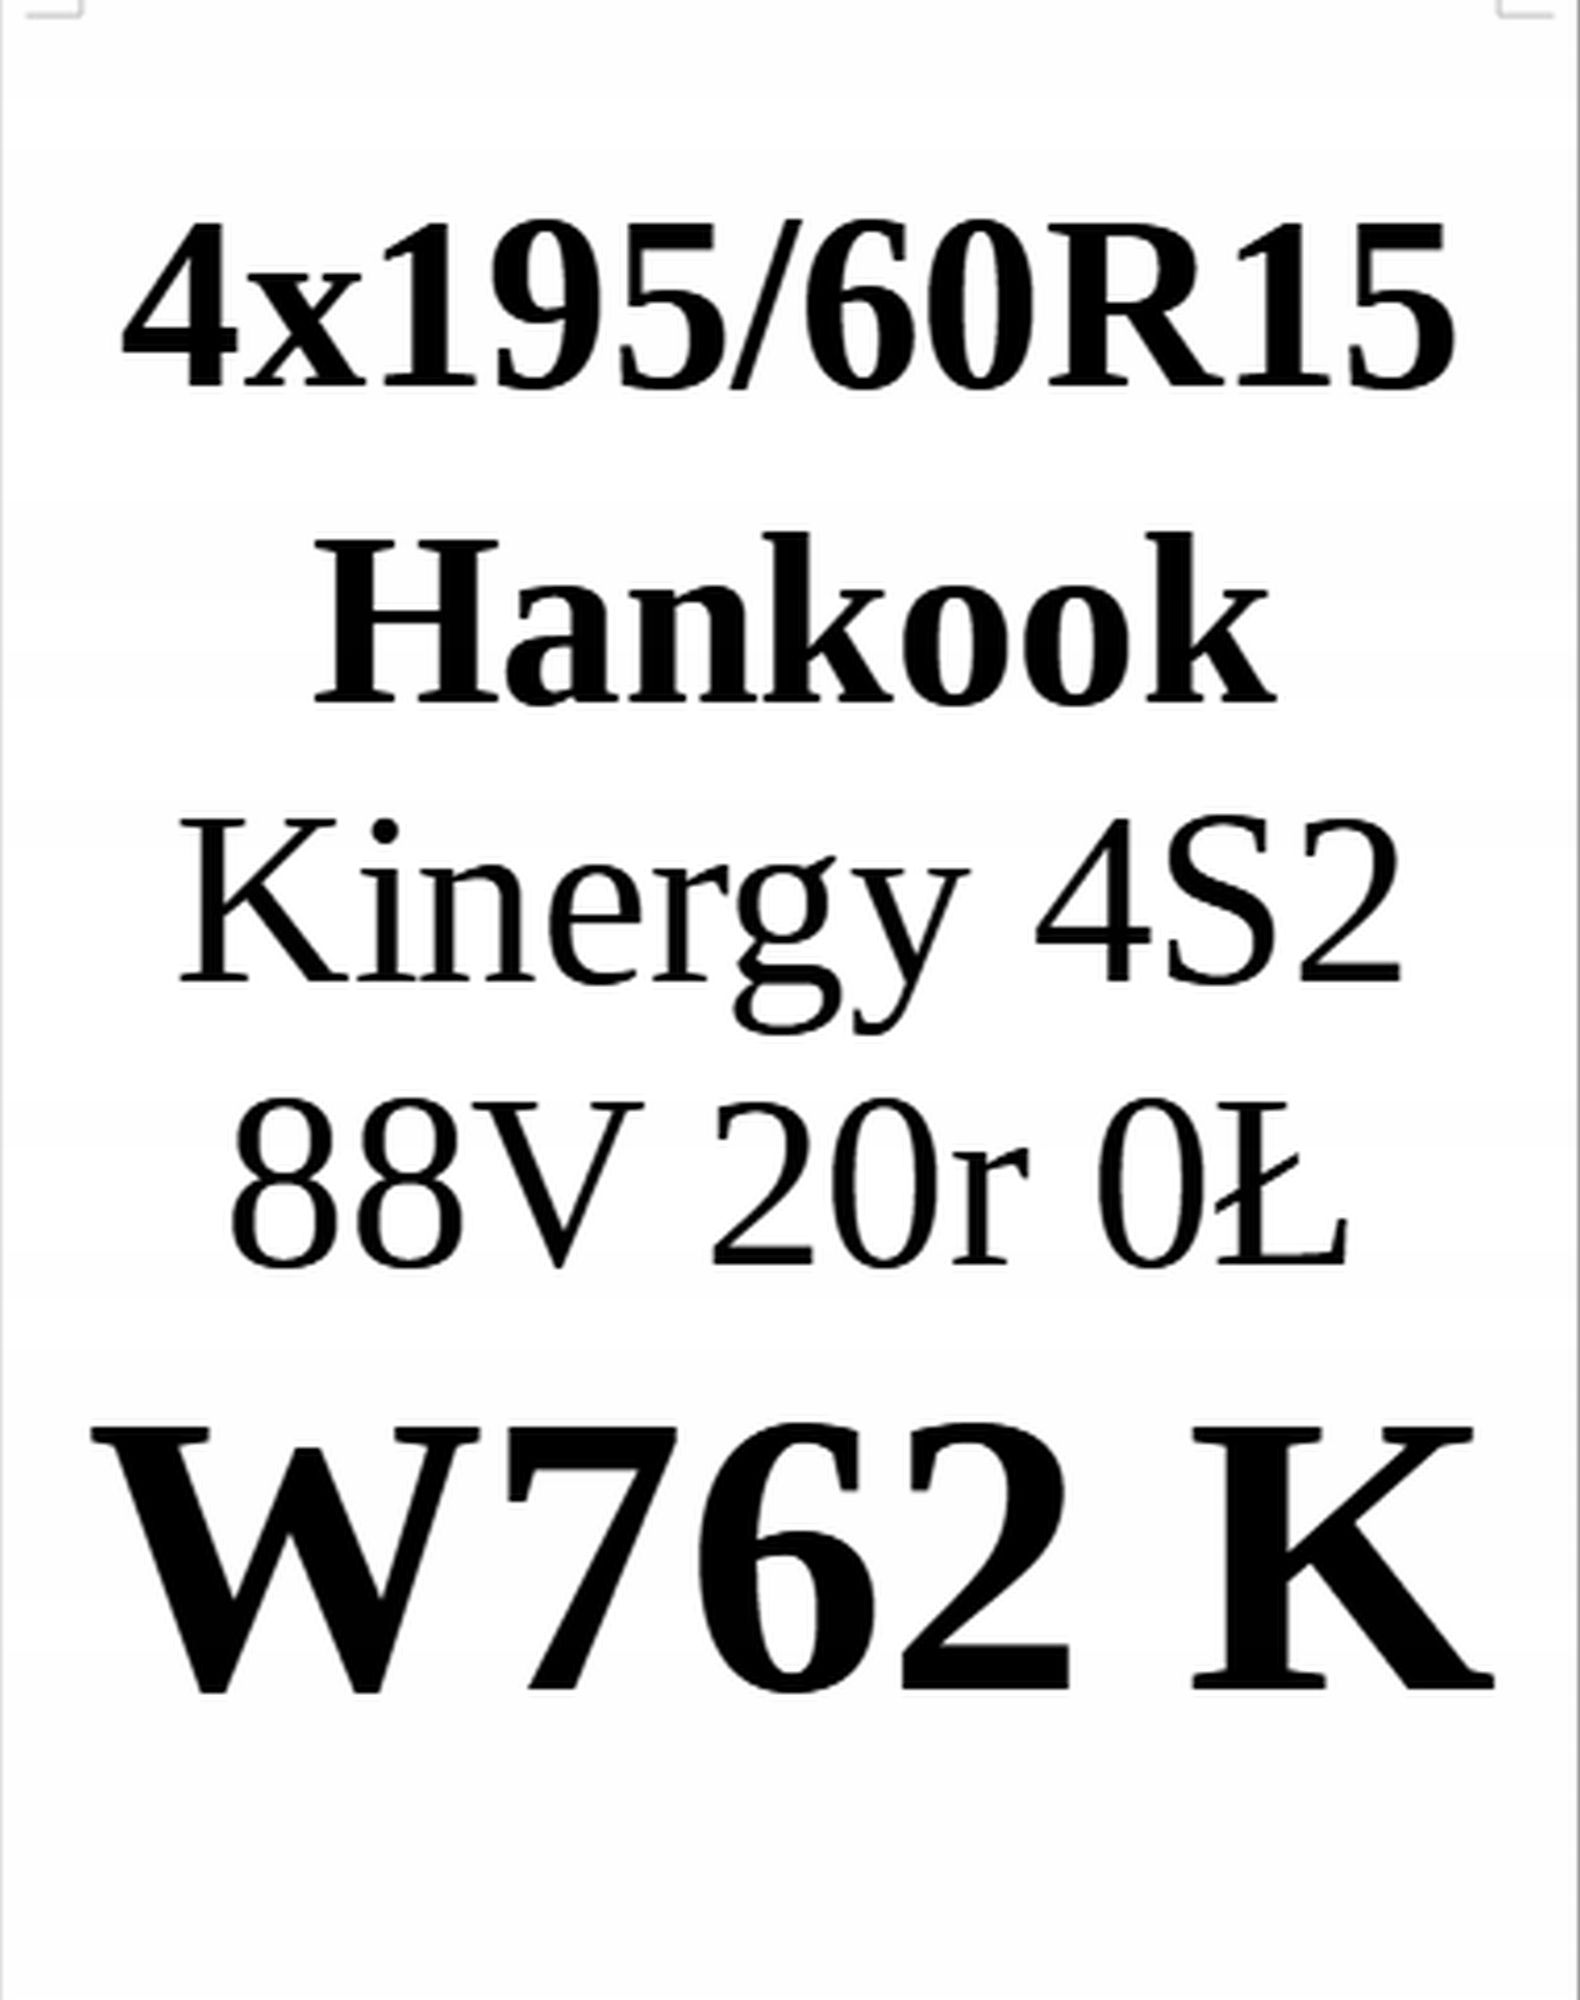 Opony 195/60/15 Hankook 6,65mm 2020r 4szt.=700zł C